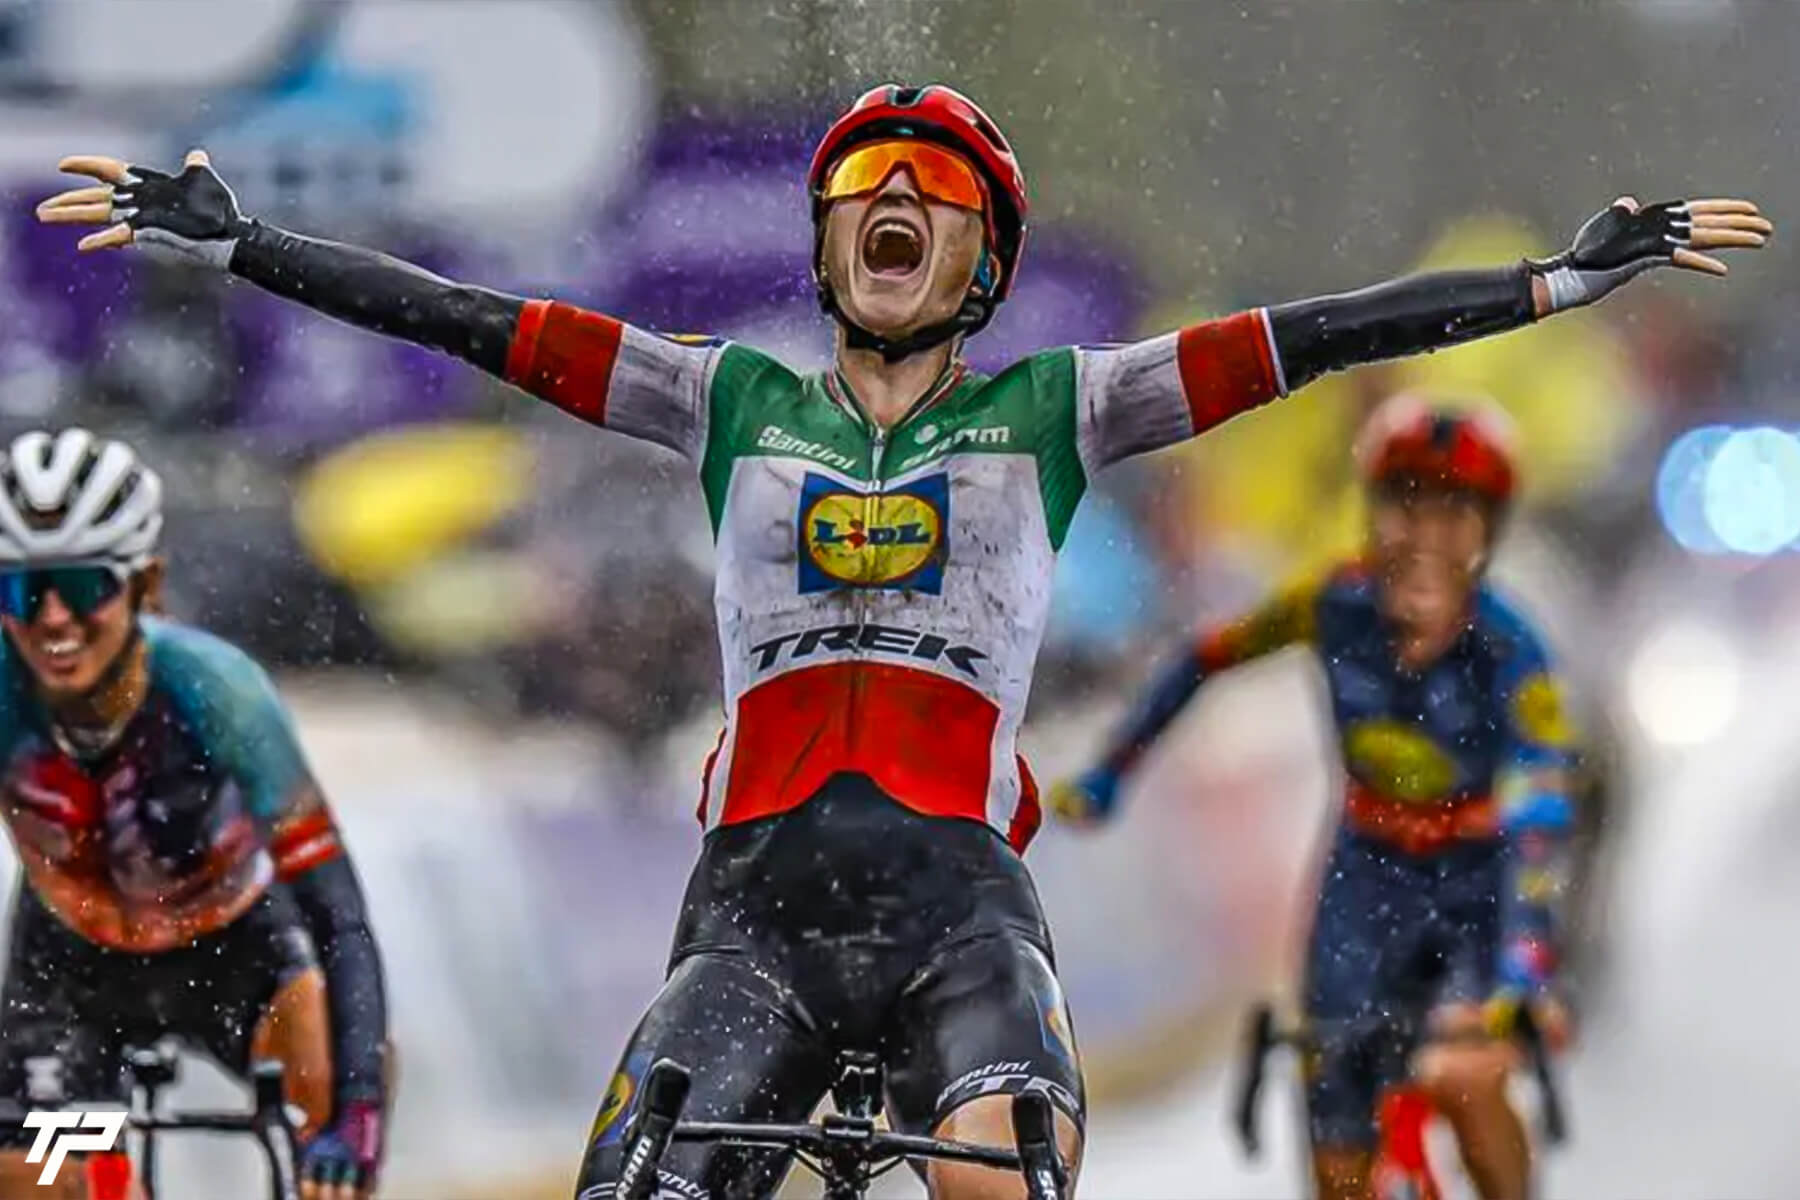 Longo Borghini in tricolore prima al Fiandre: capolavoro Lidl Trek